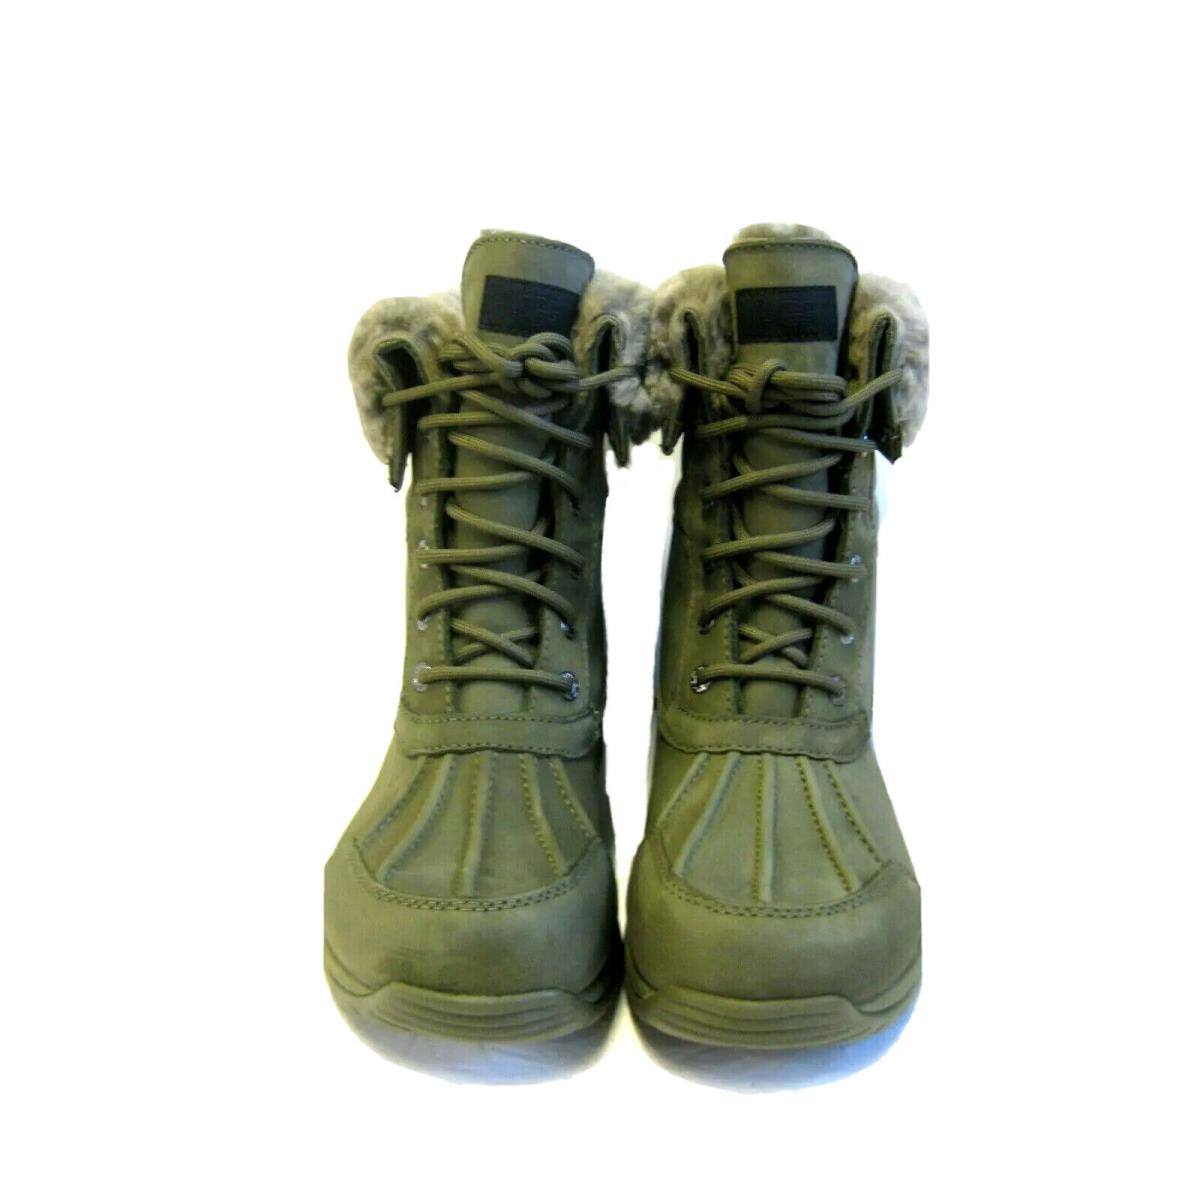 Ugg Butte Mono Men Winter Boots Leathe Moss Green US 10.5 /uk 9.5 / EU 43.5 - Moss Green